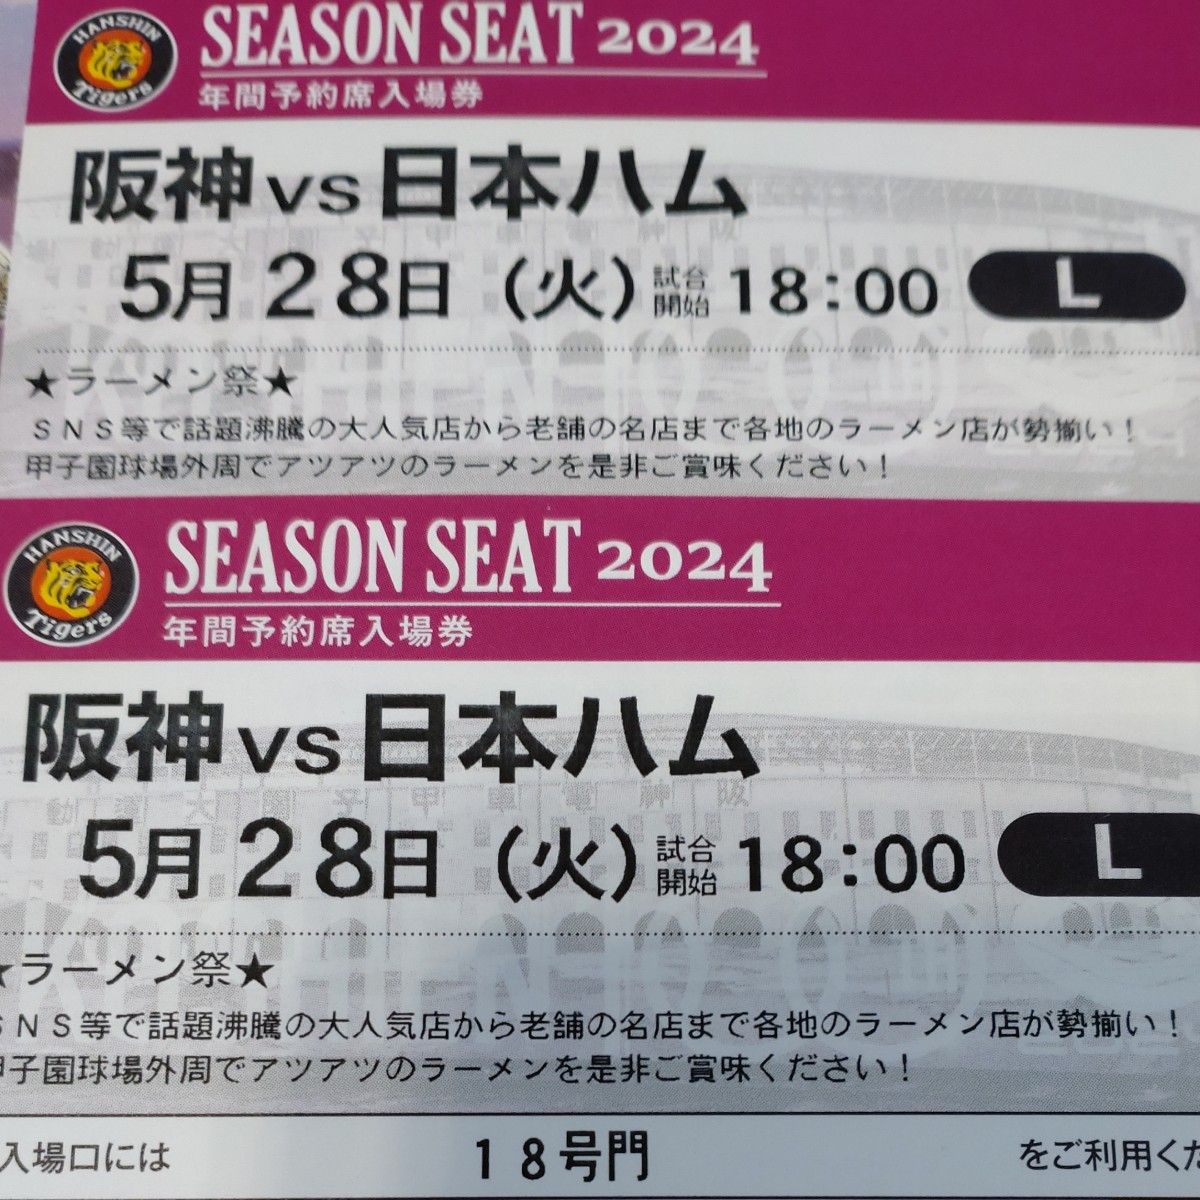 阪神タイガースチケット 5月28日(火)VS日本ハム戦  甲子園球場 レフト下段外野指定席 2枚